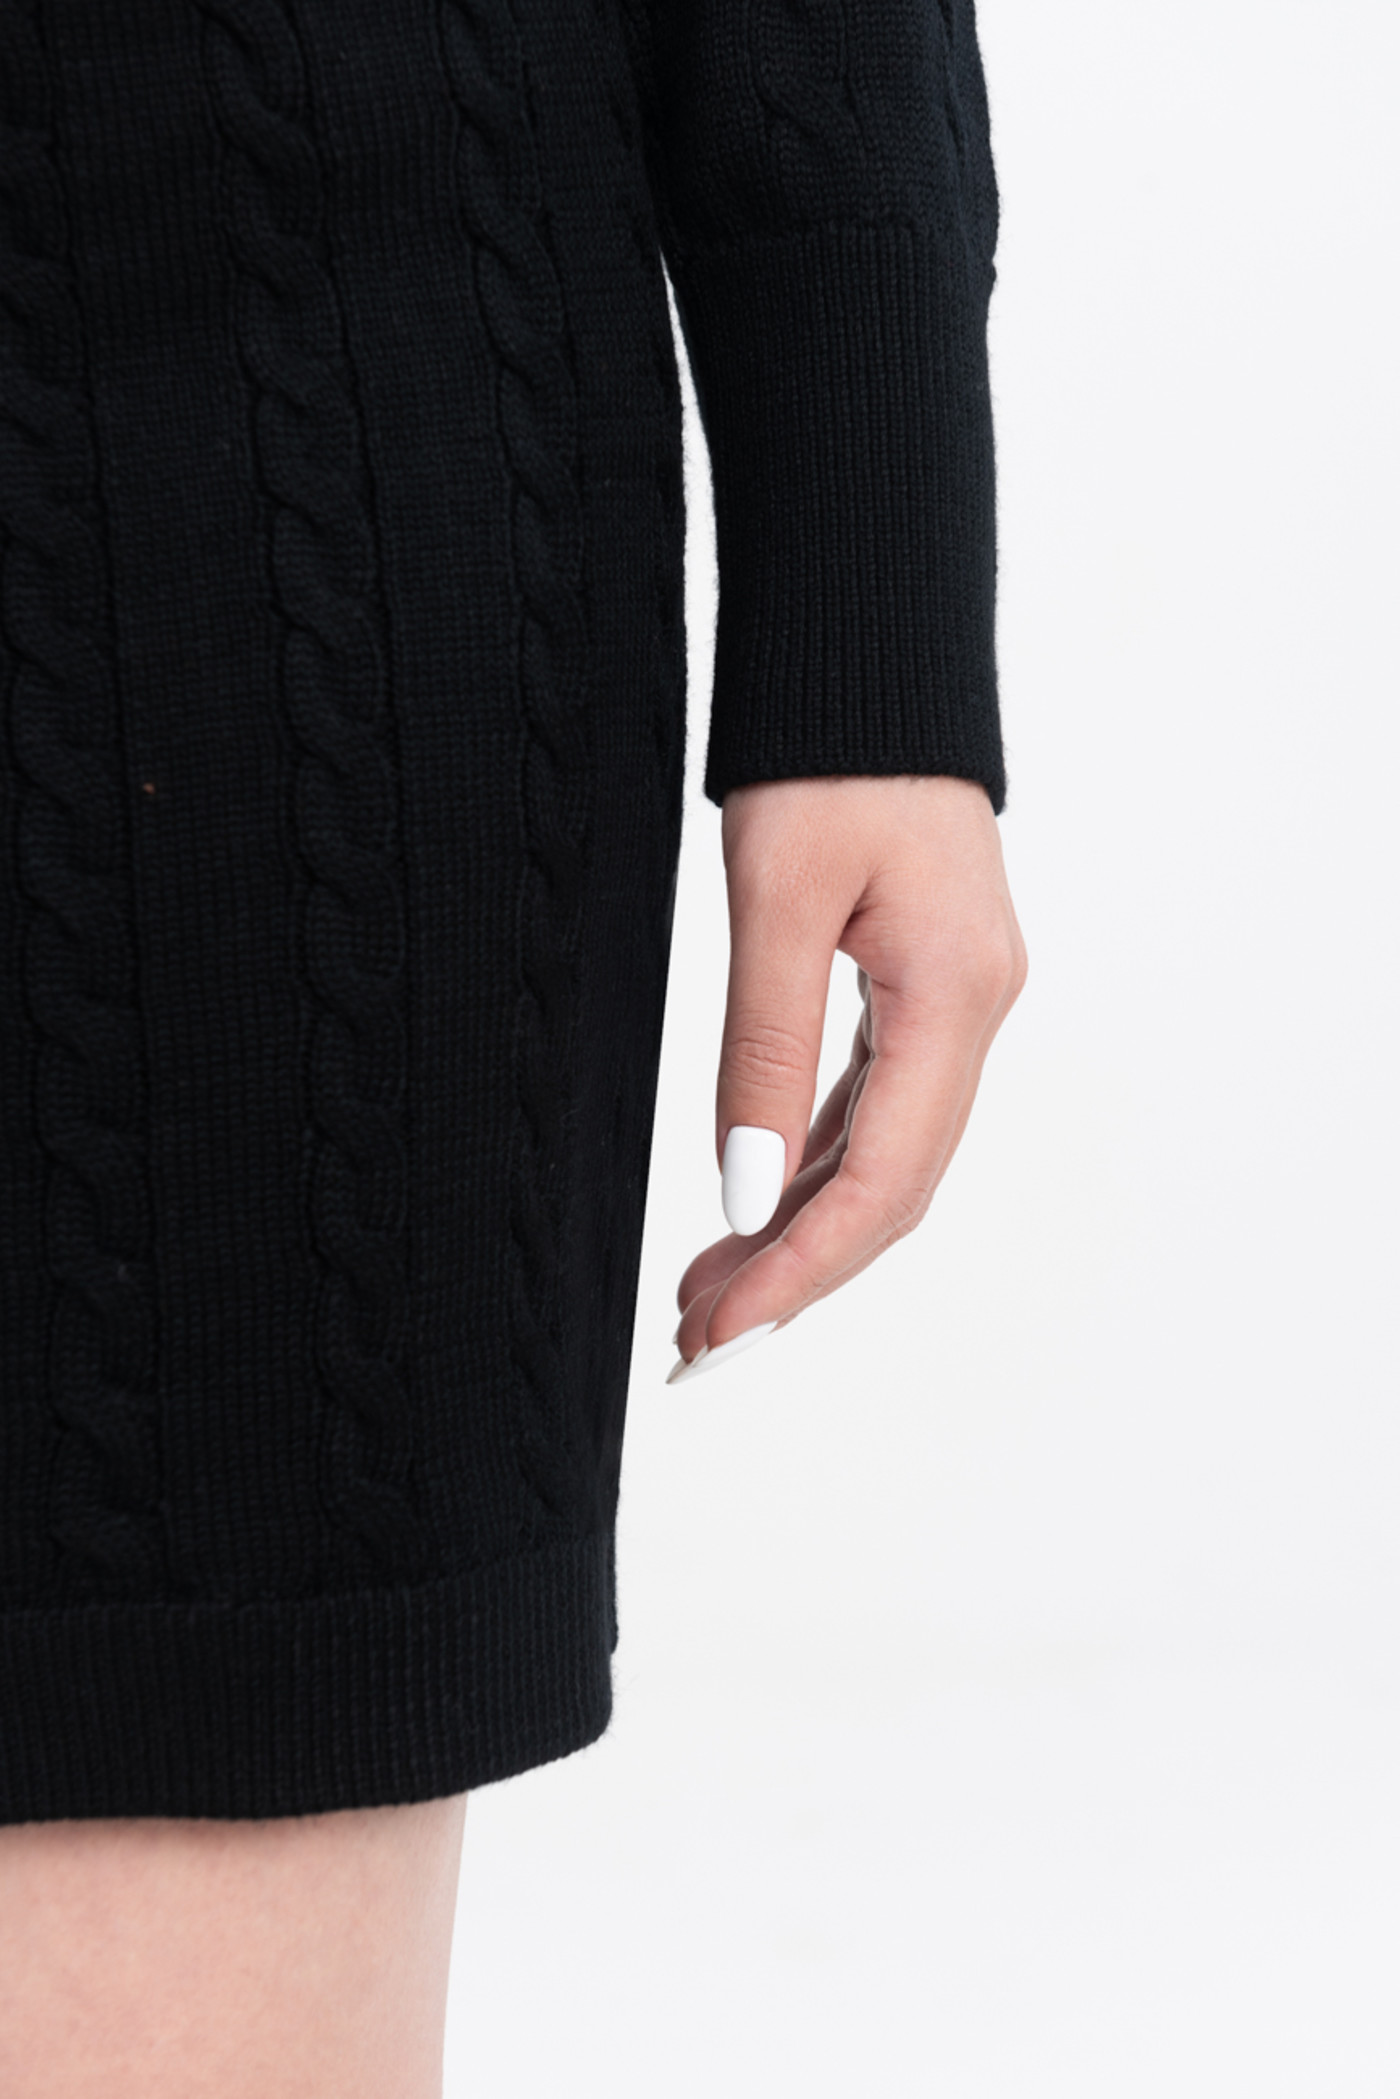 Merino Wool croptop - áo khoác len lông cừu dáng croptop 